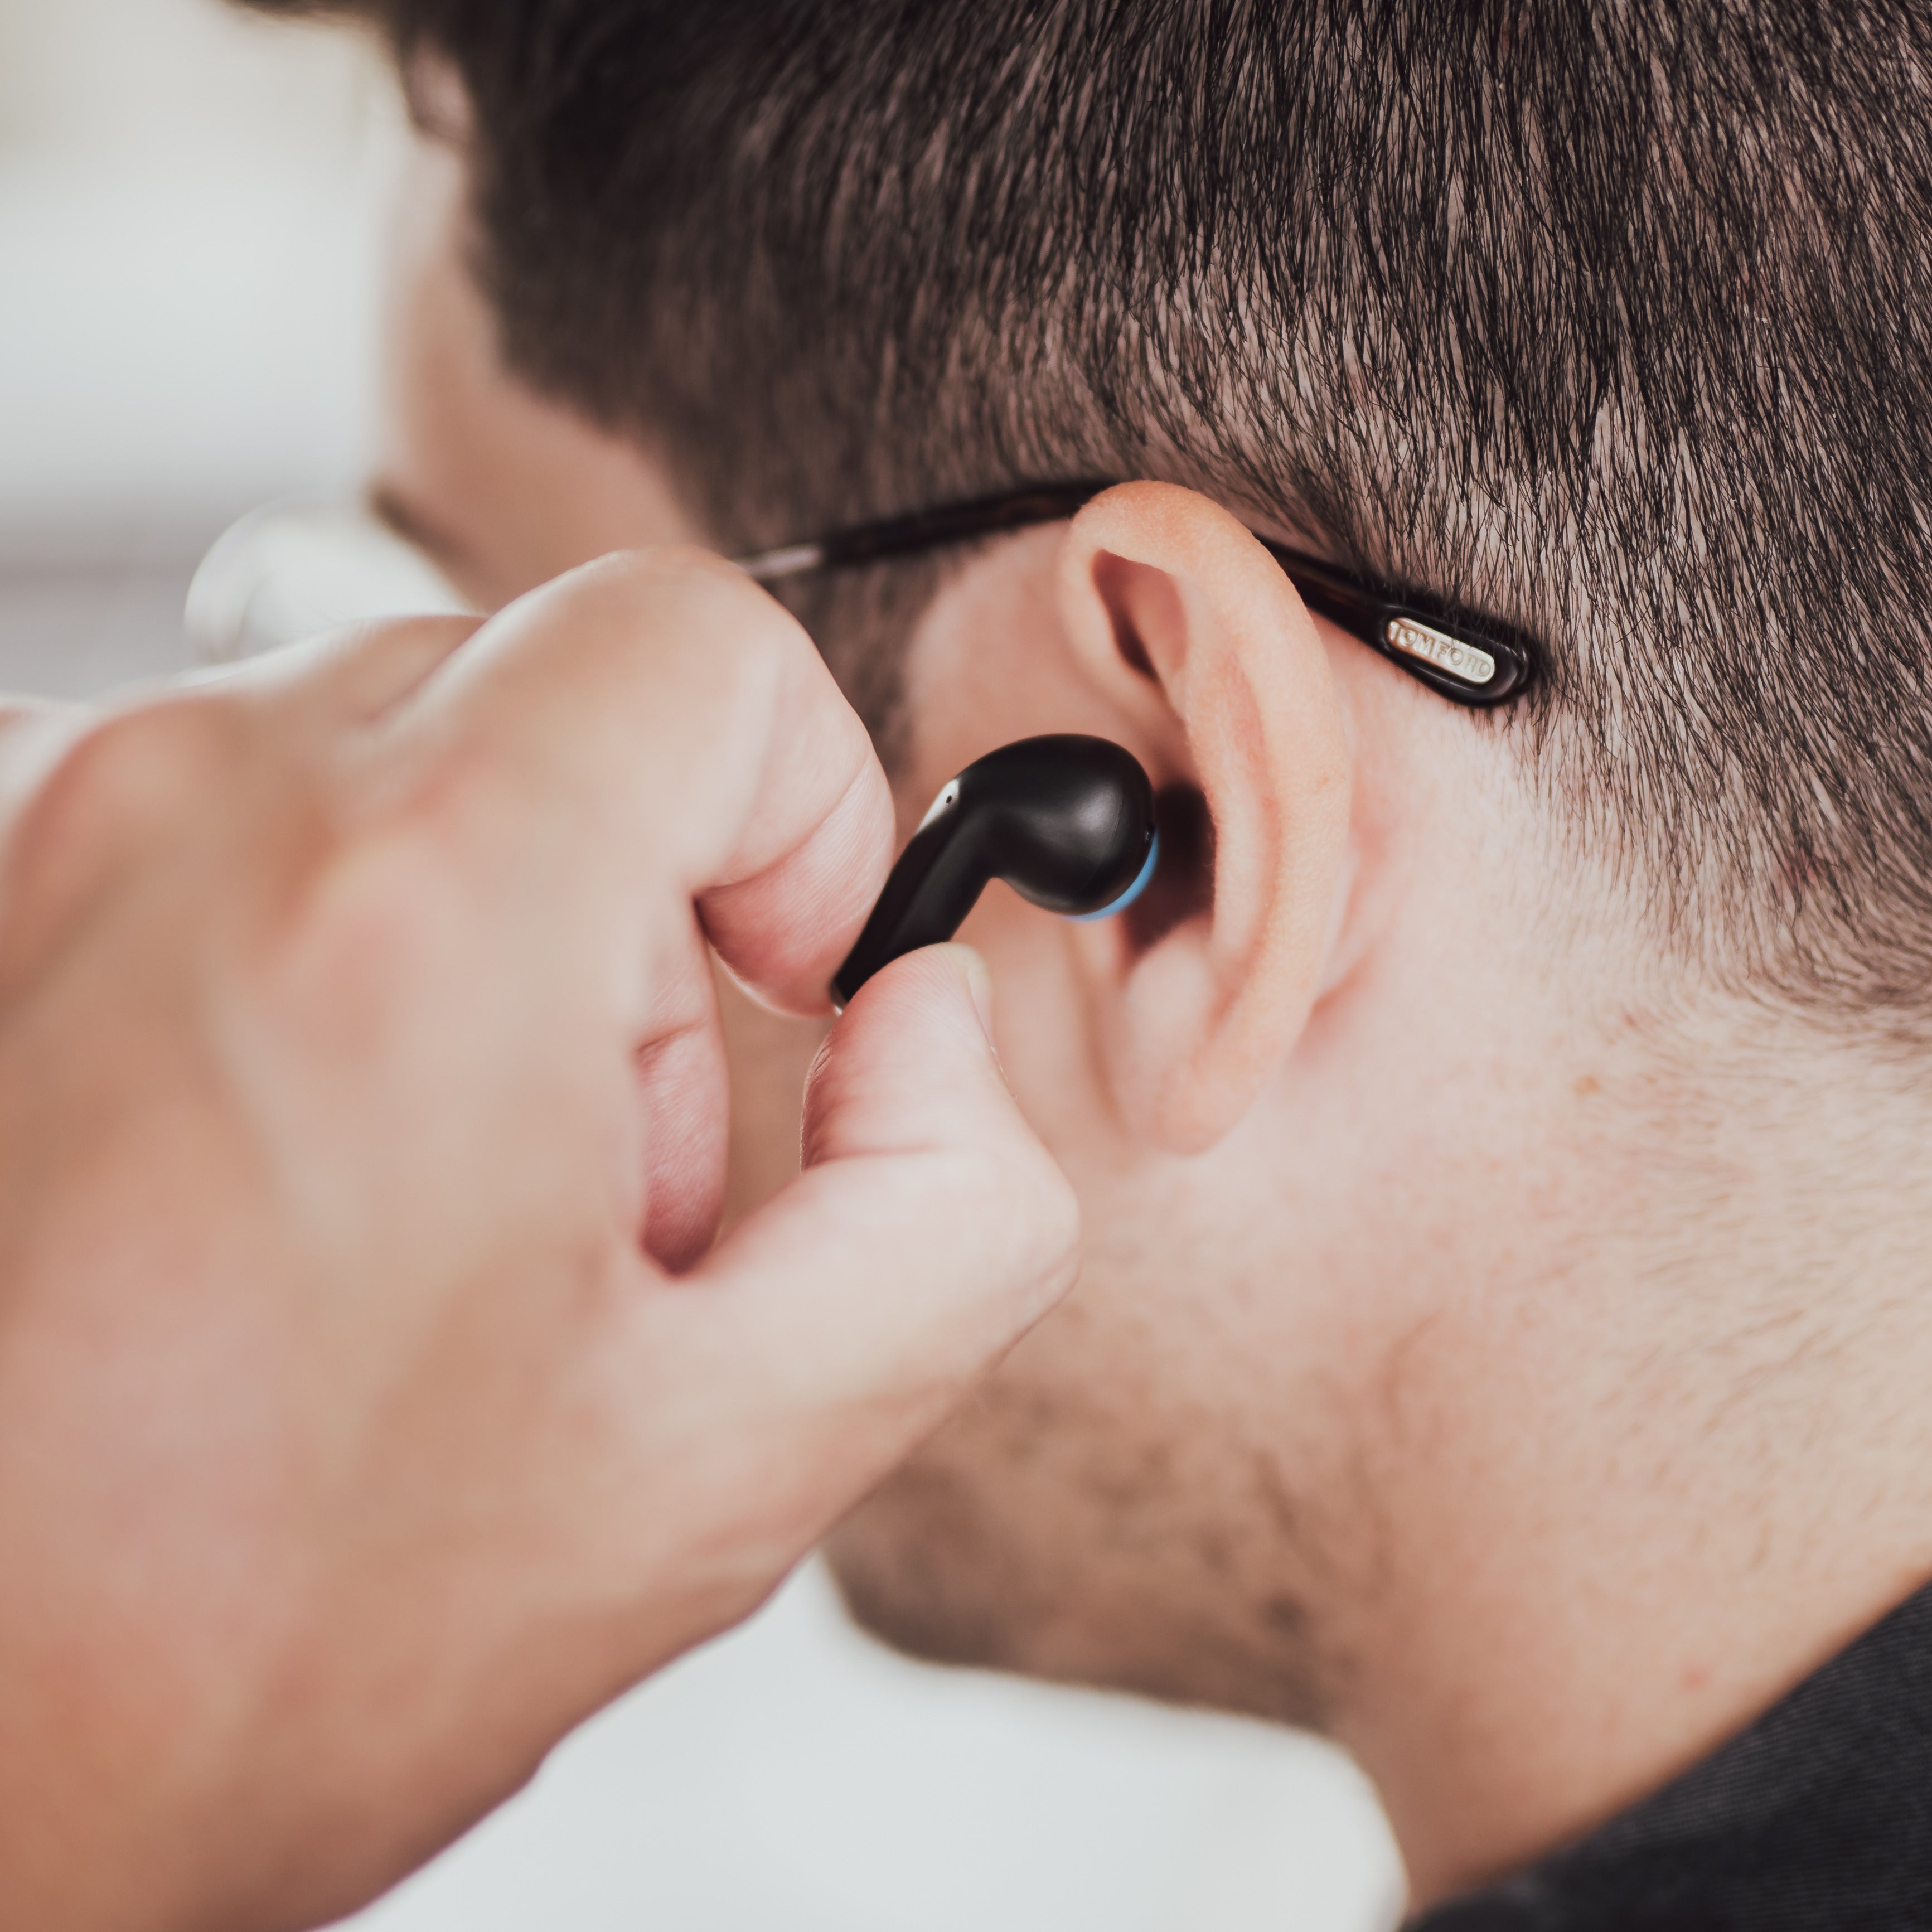 BLAUPUNKT TWS 20 WH, True In-ear In-Ear-Kopfhörer Weiss Wireless Bluetooth